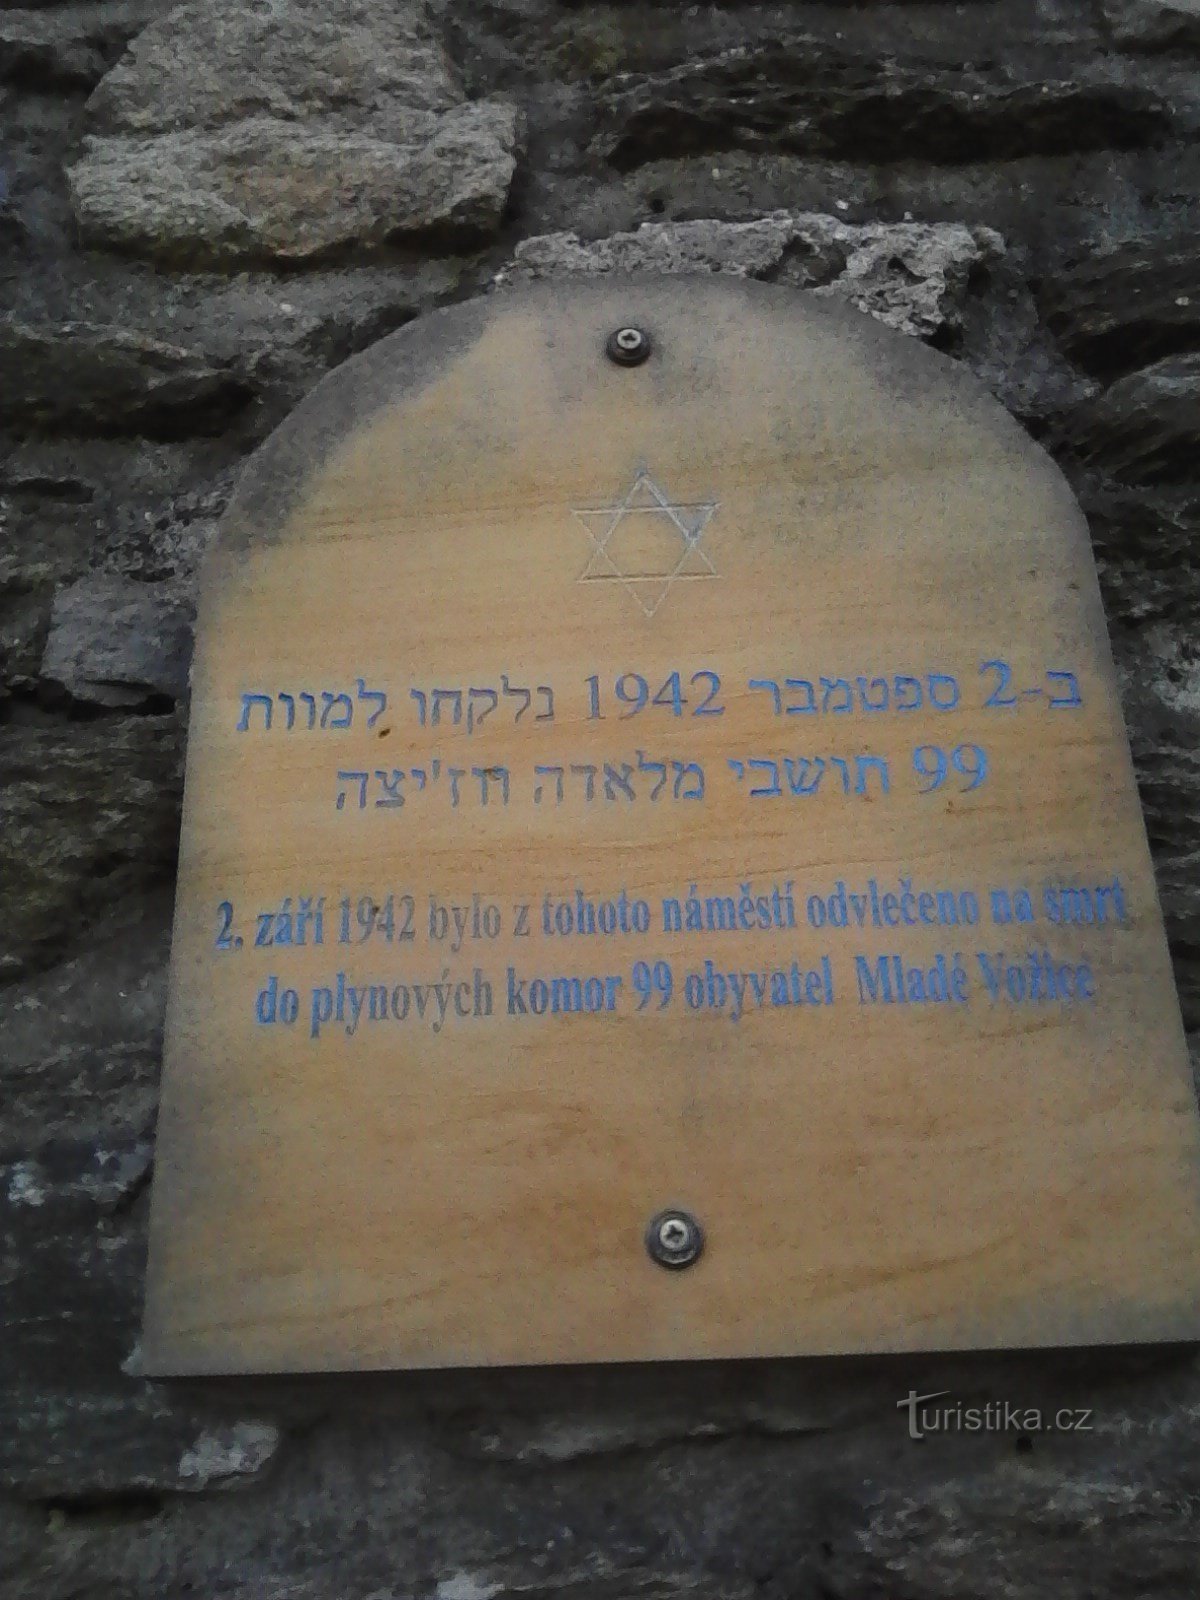 1. Uma placa comemorativa dos horrores da guerra na parede em frente à igreja